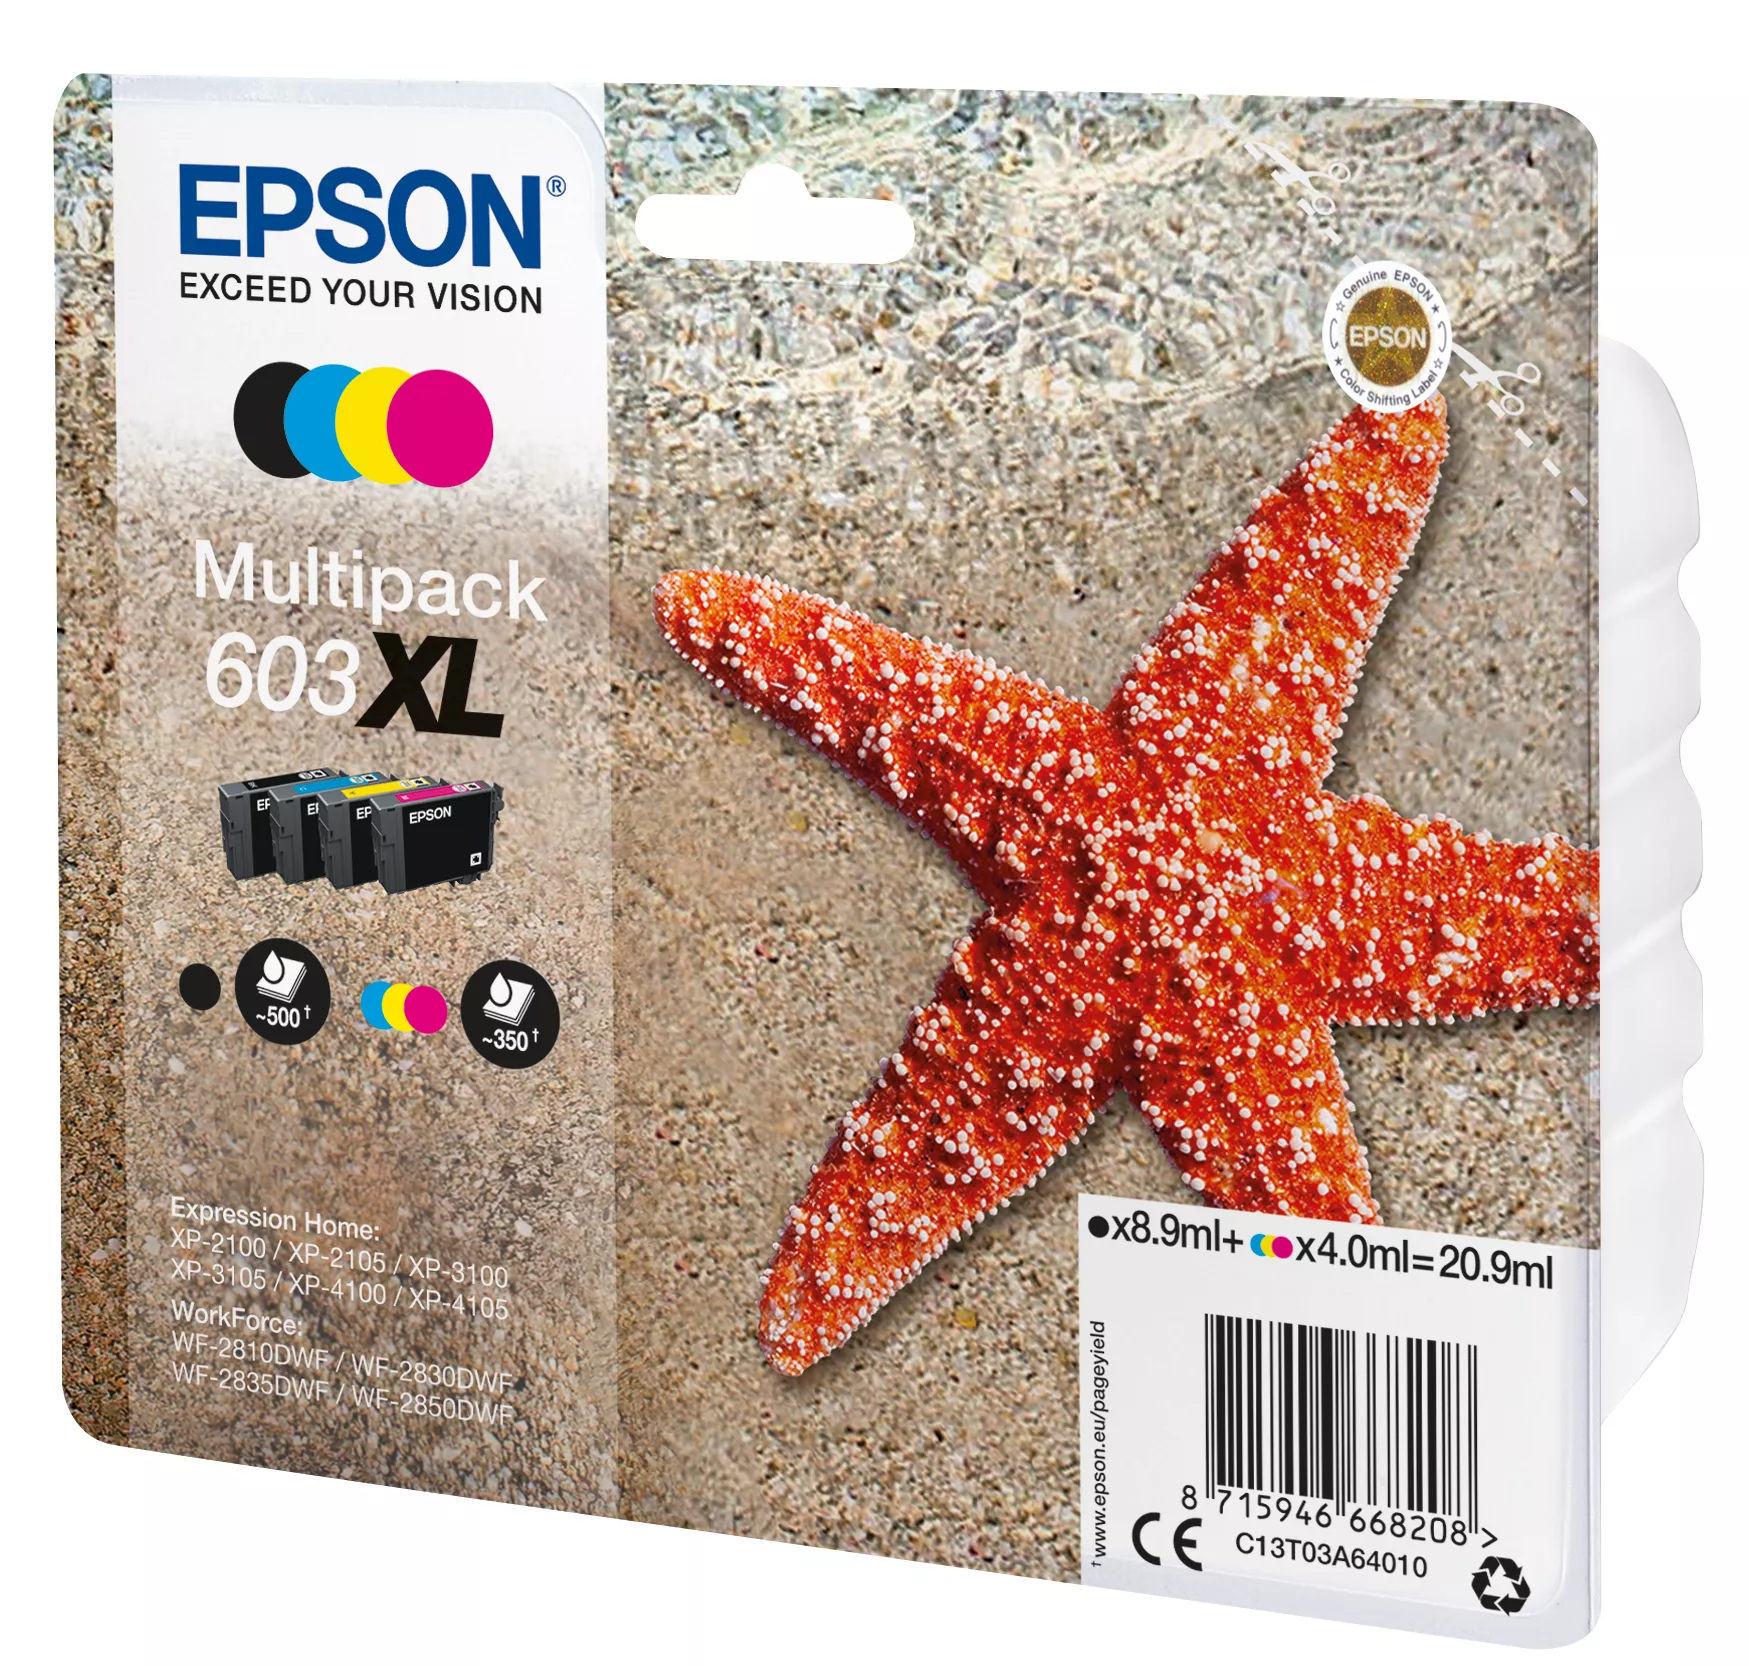 Vente EPSON Multipack 4-colours 603XL Ink Epson au meilleur prix - visuel 2